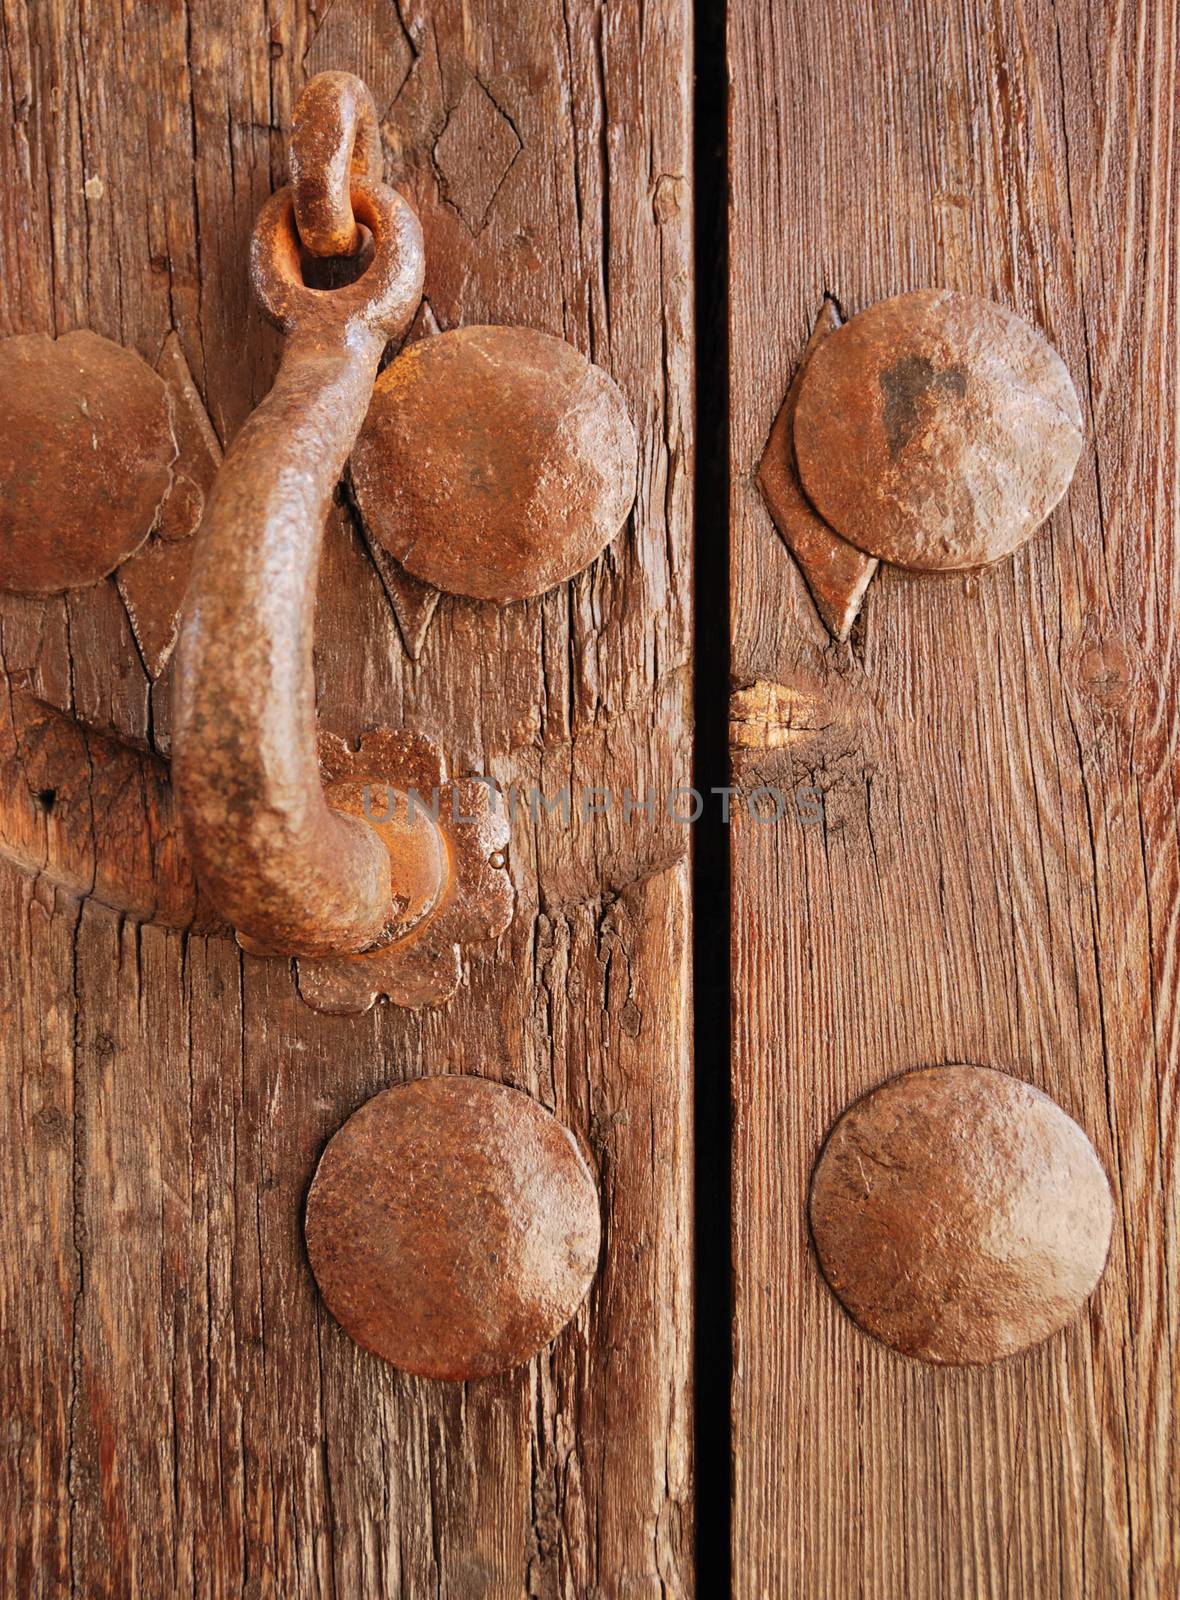 Wooden door located in Monastery La Cartuja in Seville, Spain.